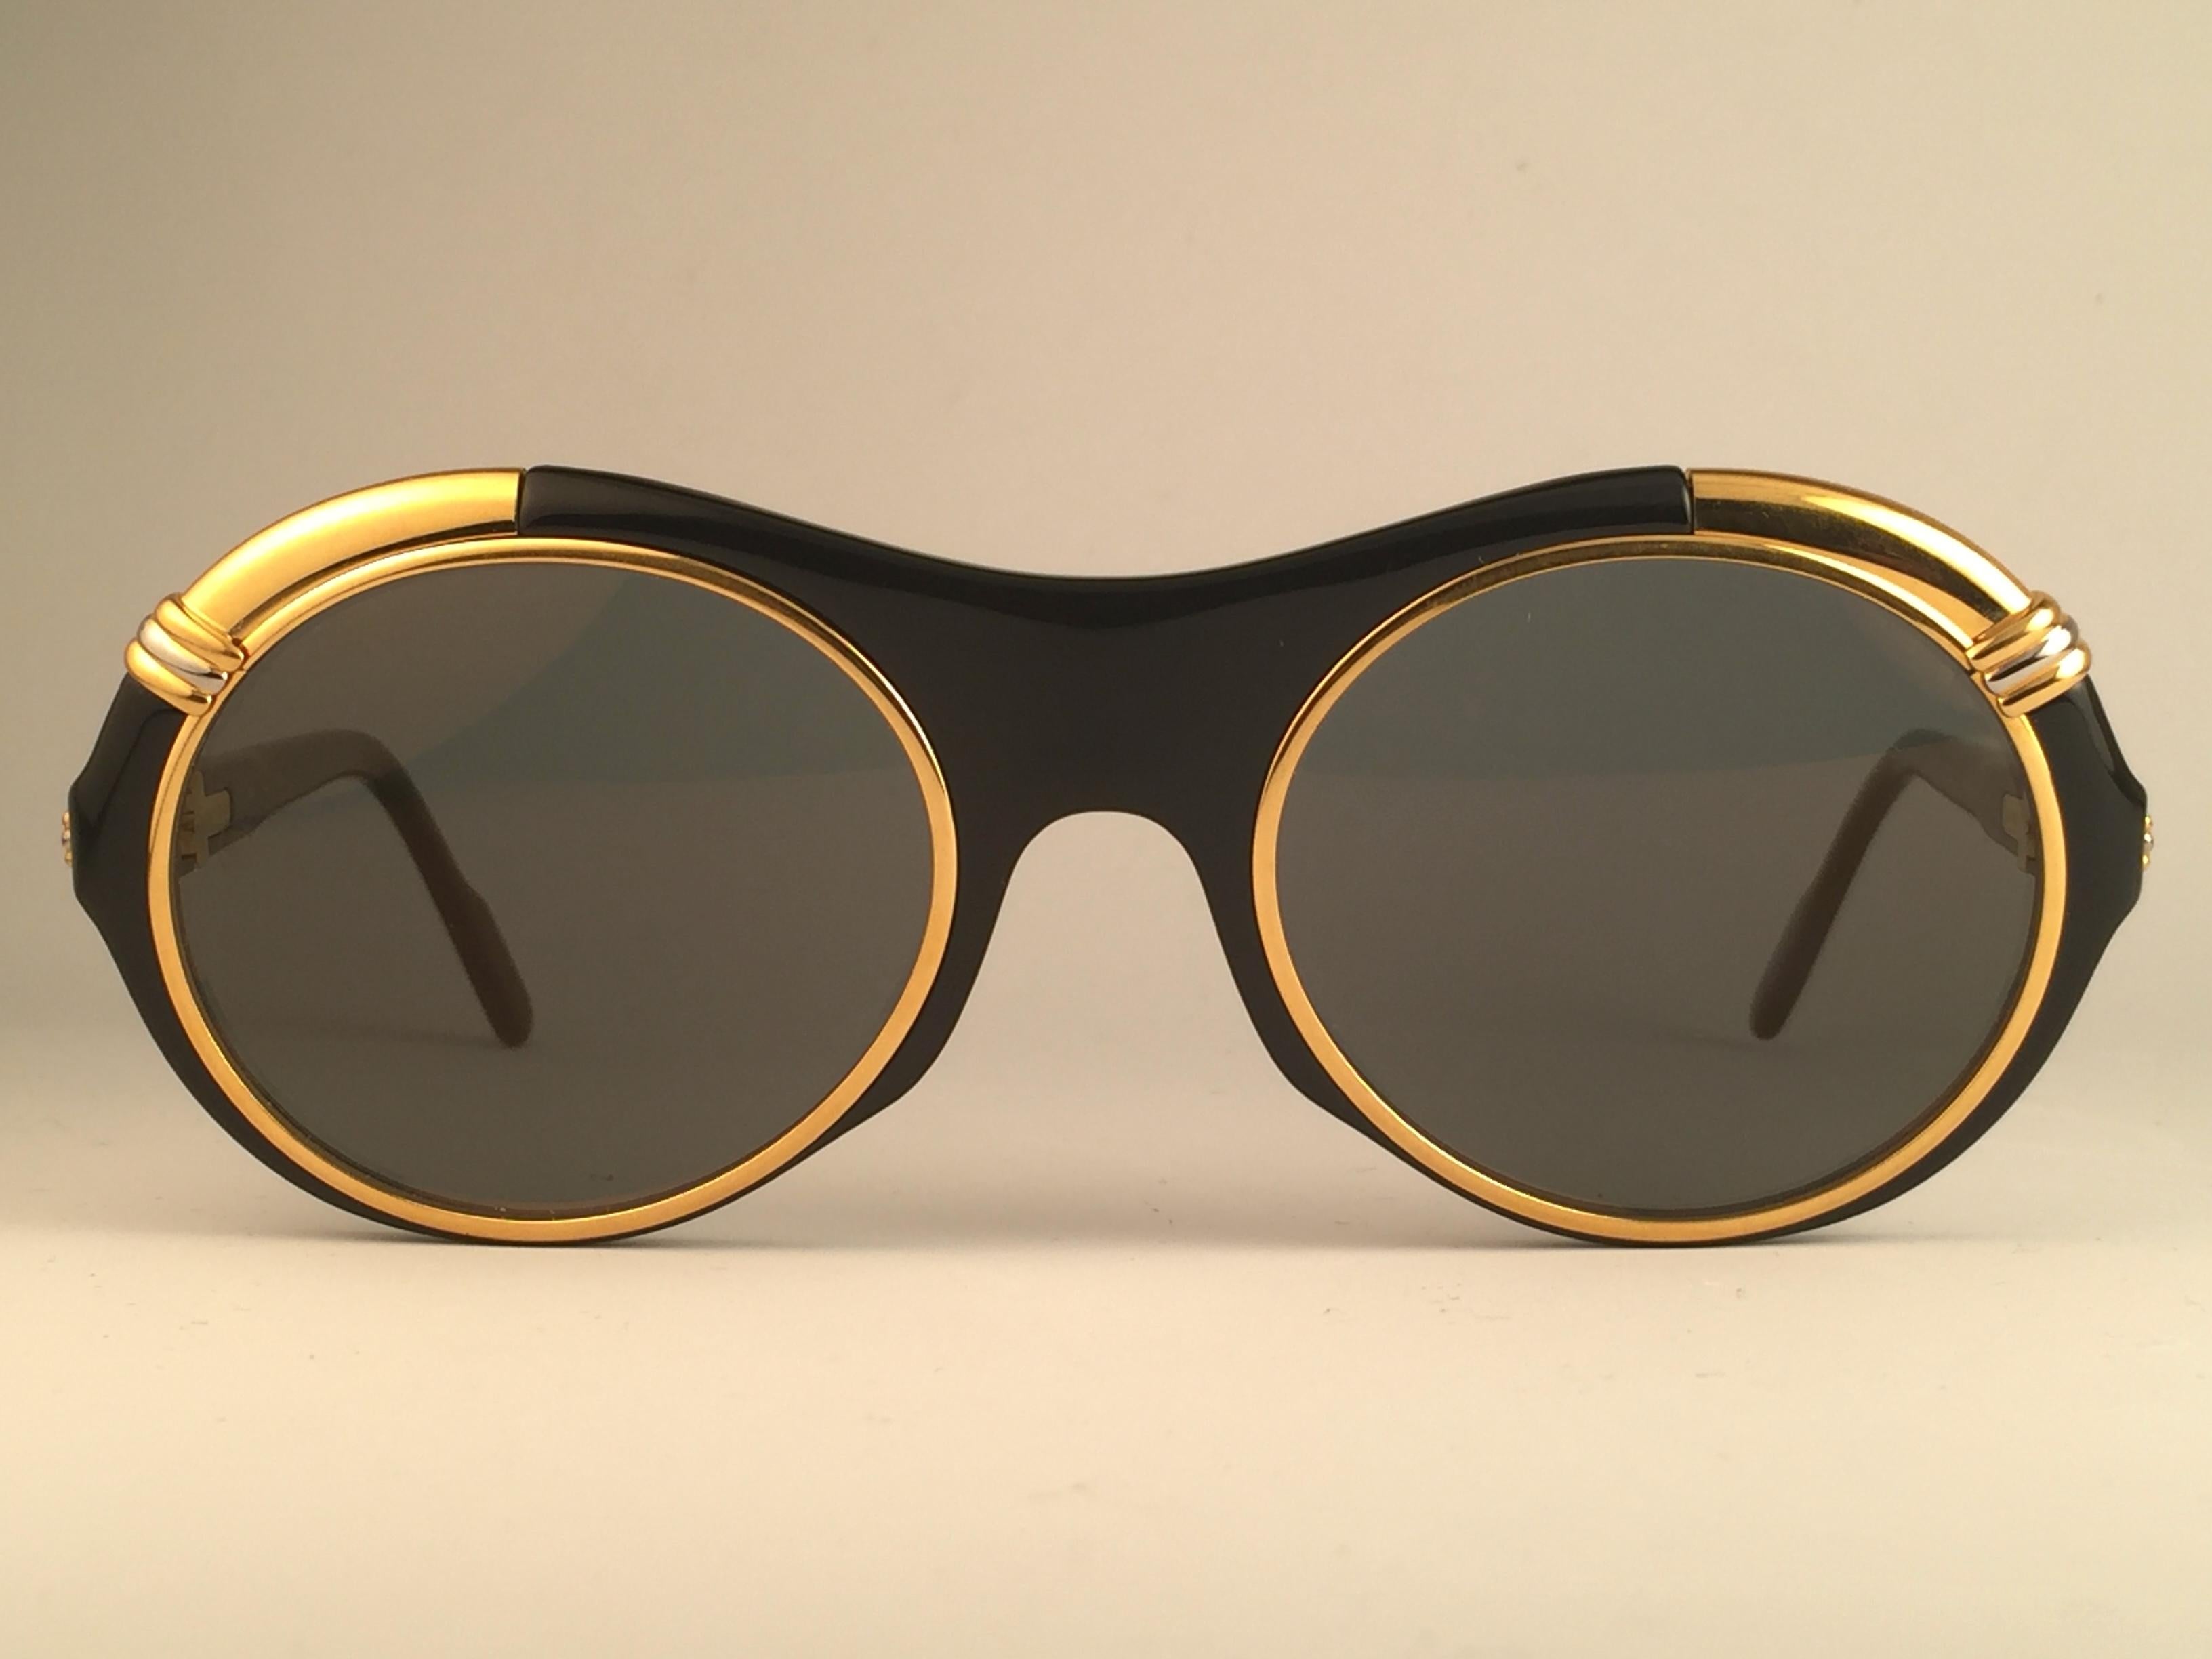 1991 Original Cartier Diabolo Art Deco Sonnenbrille mit fleckenlosem erstaunlichen braunen Gold gespiegelt (uv-Schutz). 
Der Rahmen hat in der Mitte und an den Seiten die berühmten Akzente aus echtem Gold und Weißgold.
Alle Markenzeichen.